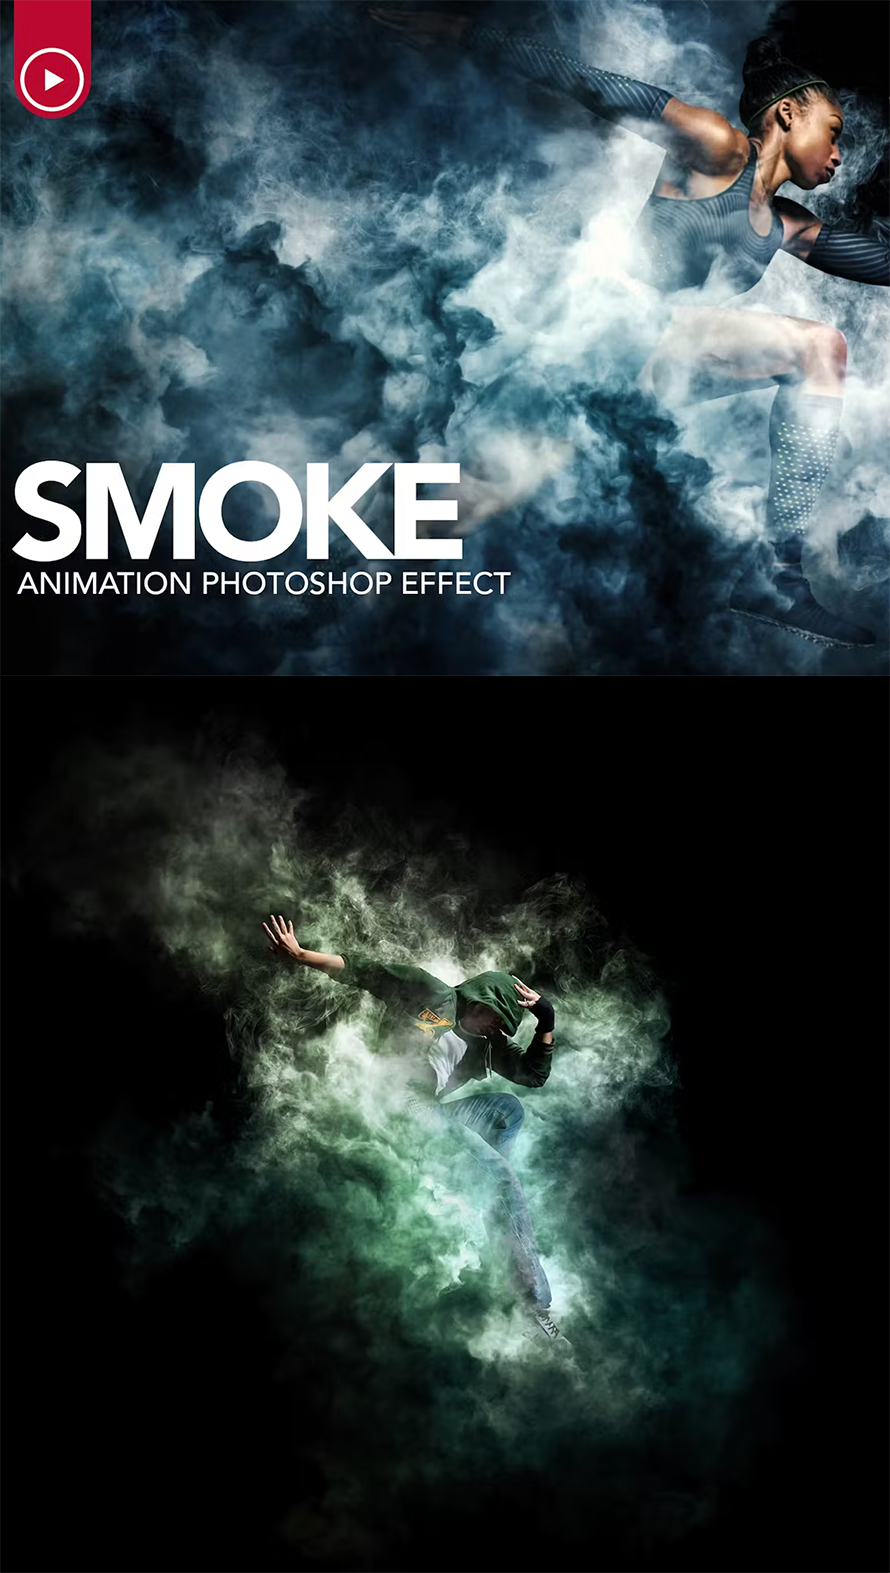 Smoke Animation Photoshop Action